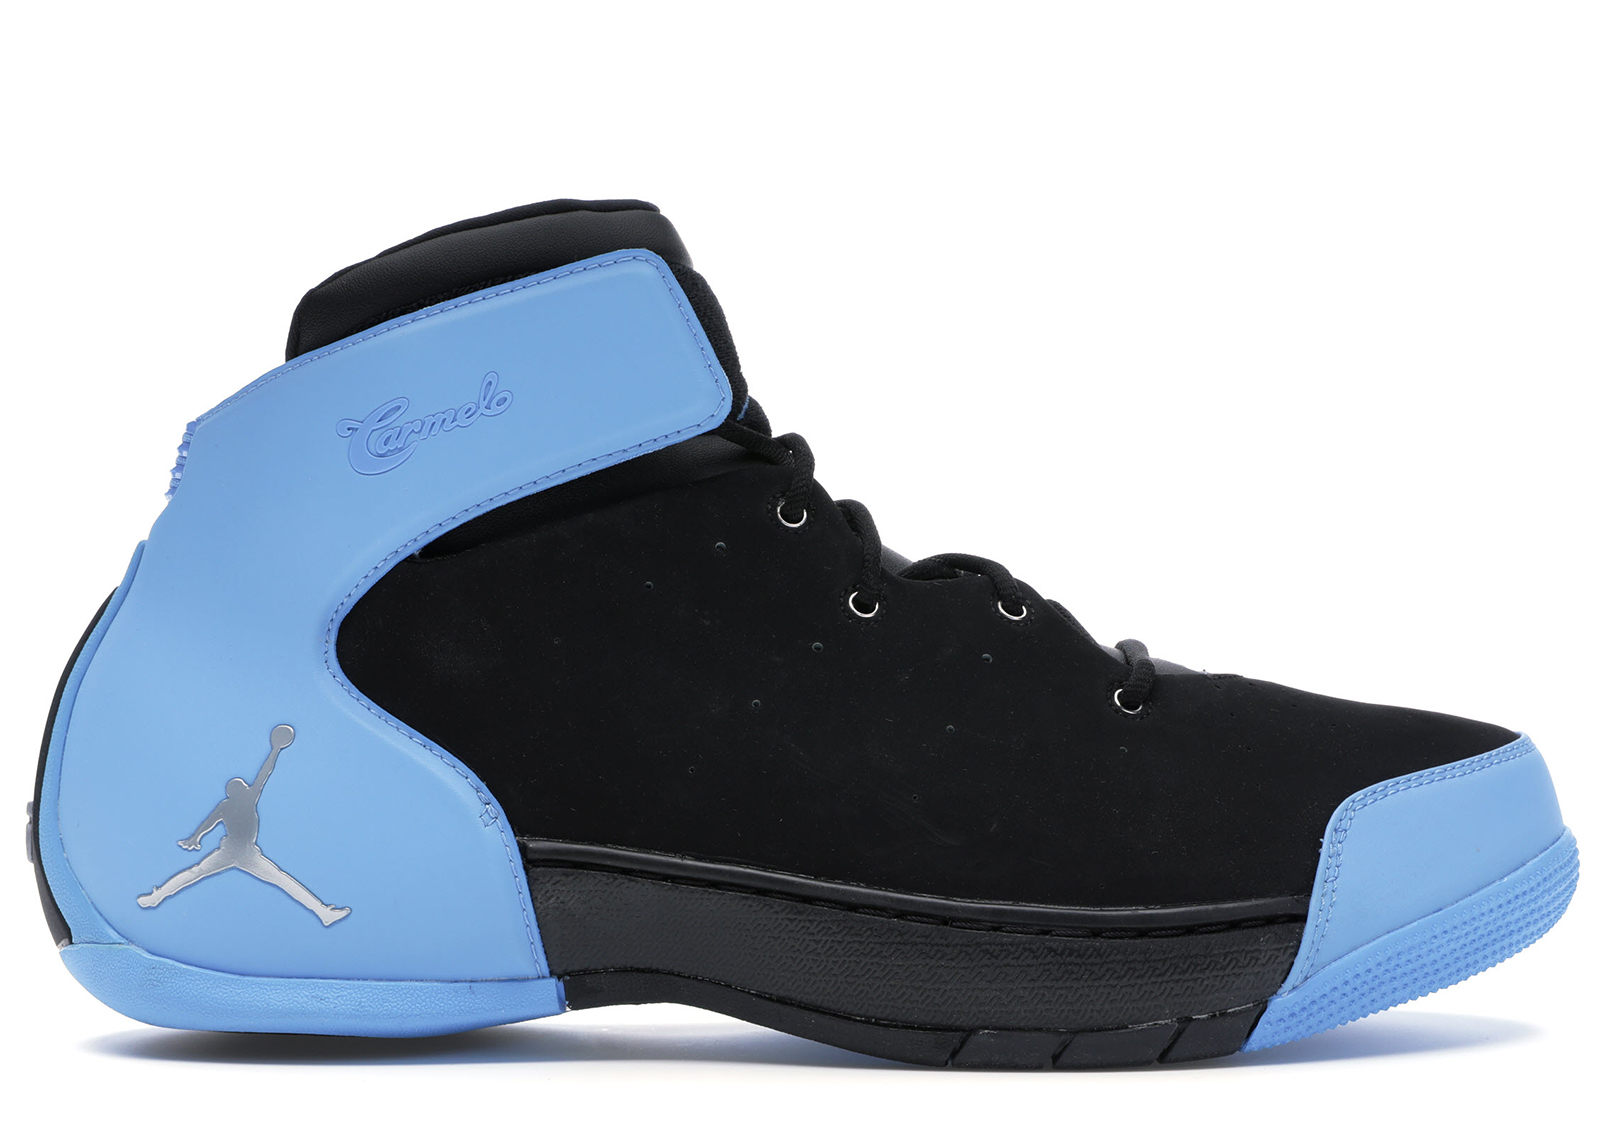 Nike Jordan Melo 1.5 Black University Blue Men's - 631310-007 - US